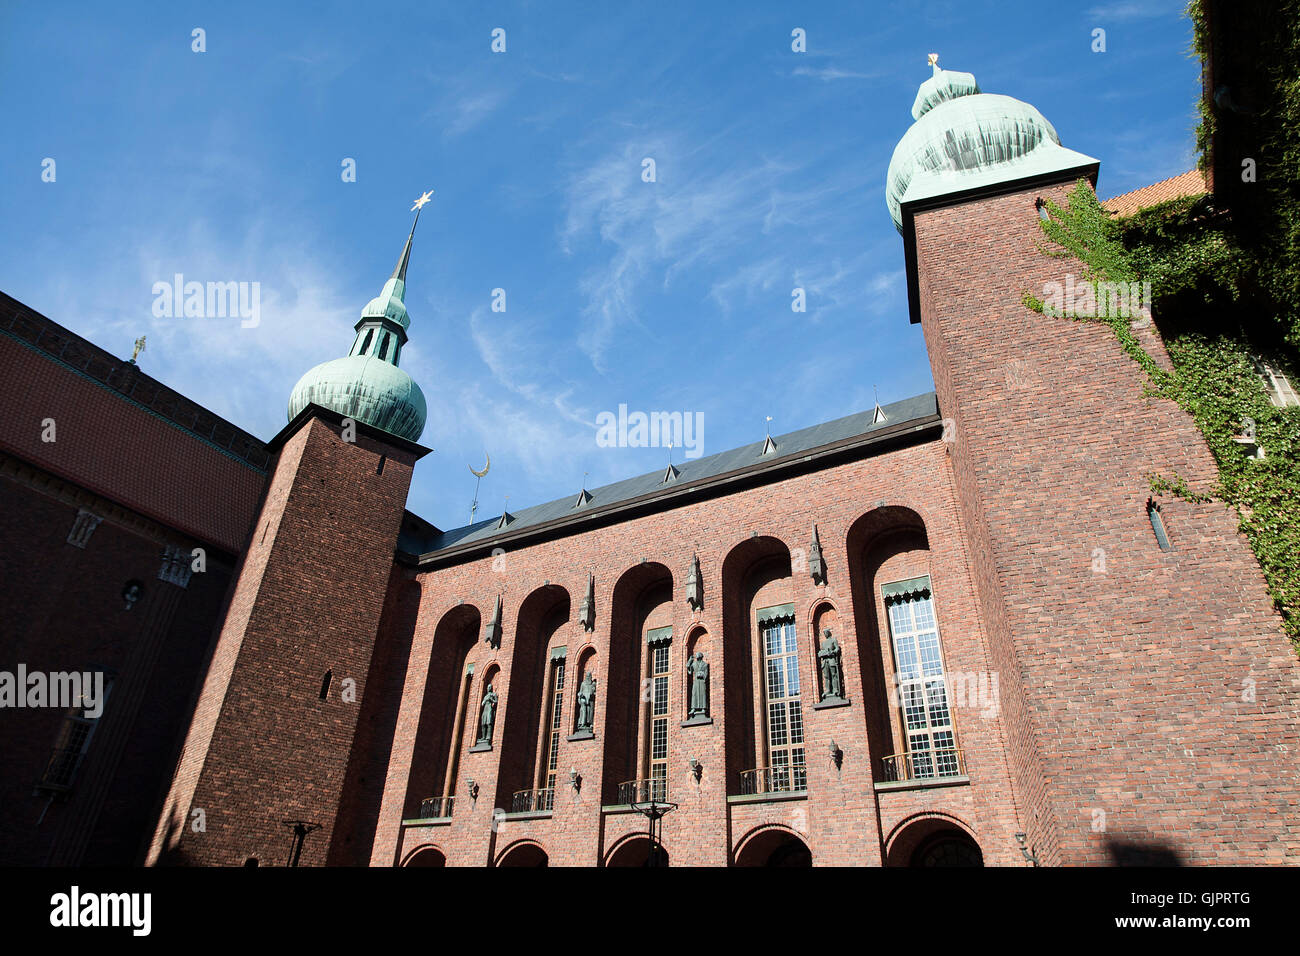 Blick vom Innenhof in der Stadt Halle Gebäude in Stockholm Schweden, nach oben zu der Zwiebel oder die Glühbirne geformte Türme Tops. Stockfoto